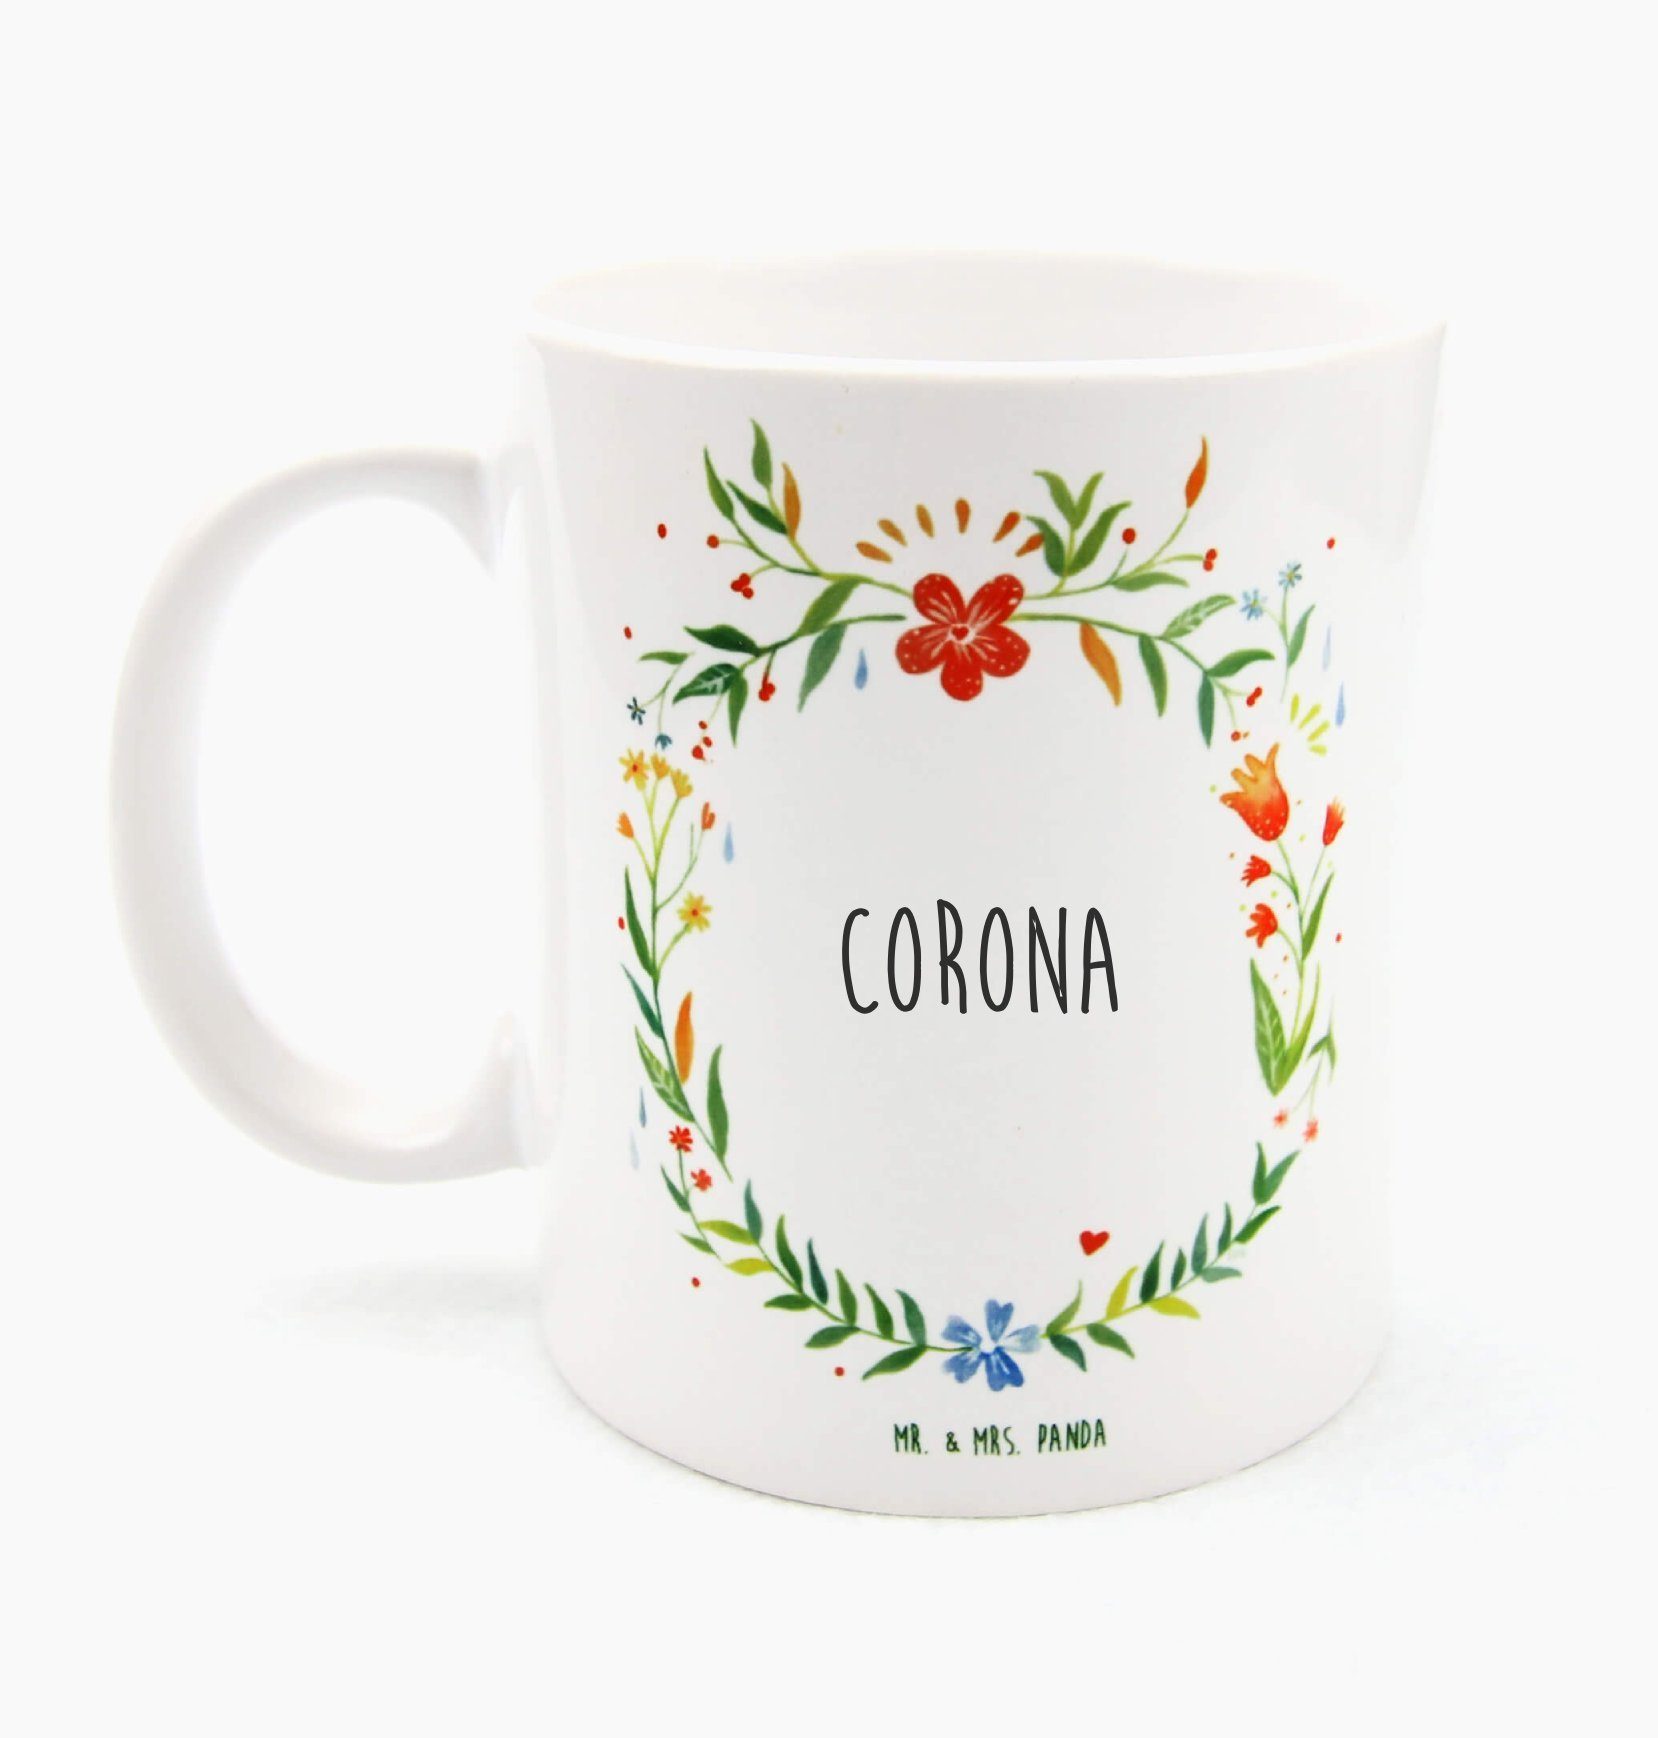 & Tasse - Geschenk, Teebe, Tasse, Porzellantasse, Corona Panda Geschenk Mrs. Mr. Kaffeetasse, Keramik